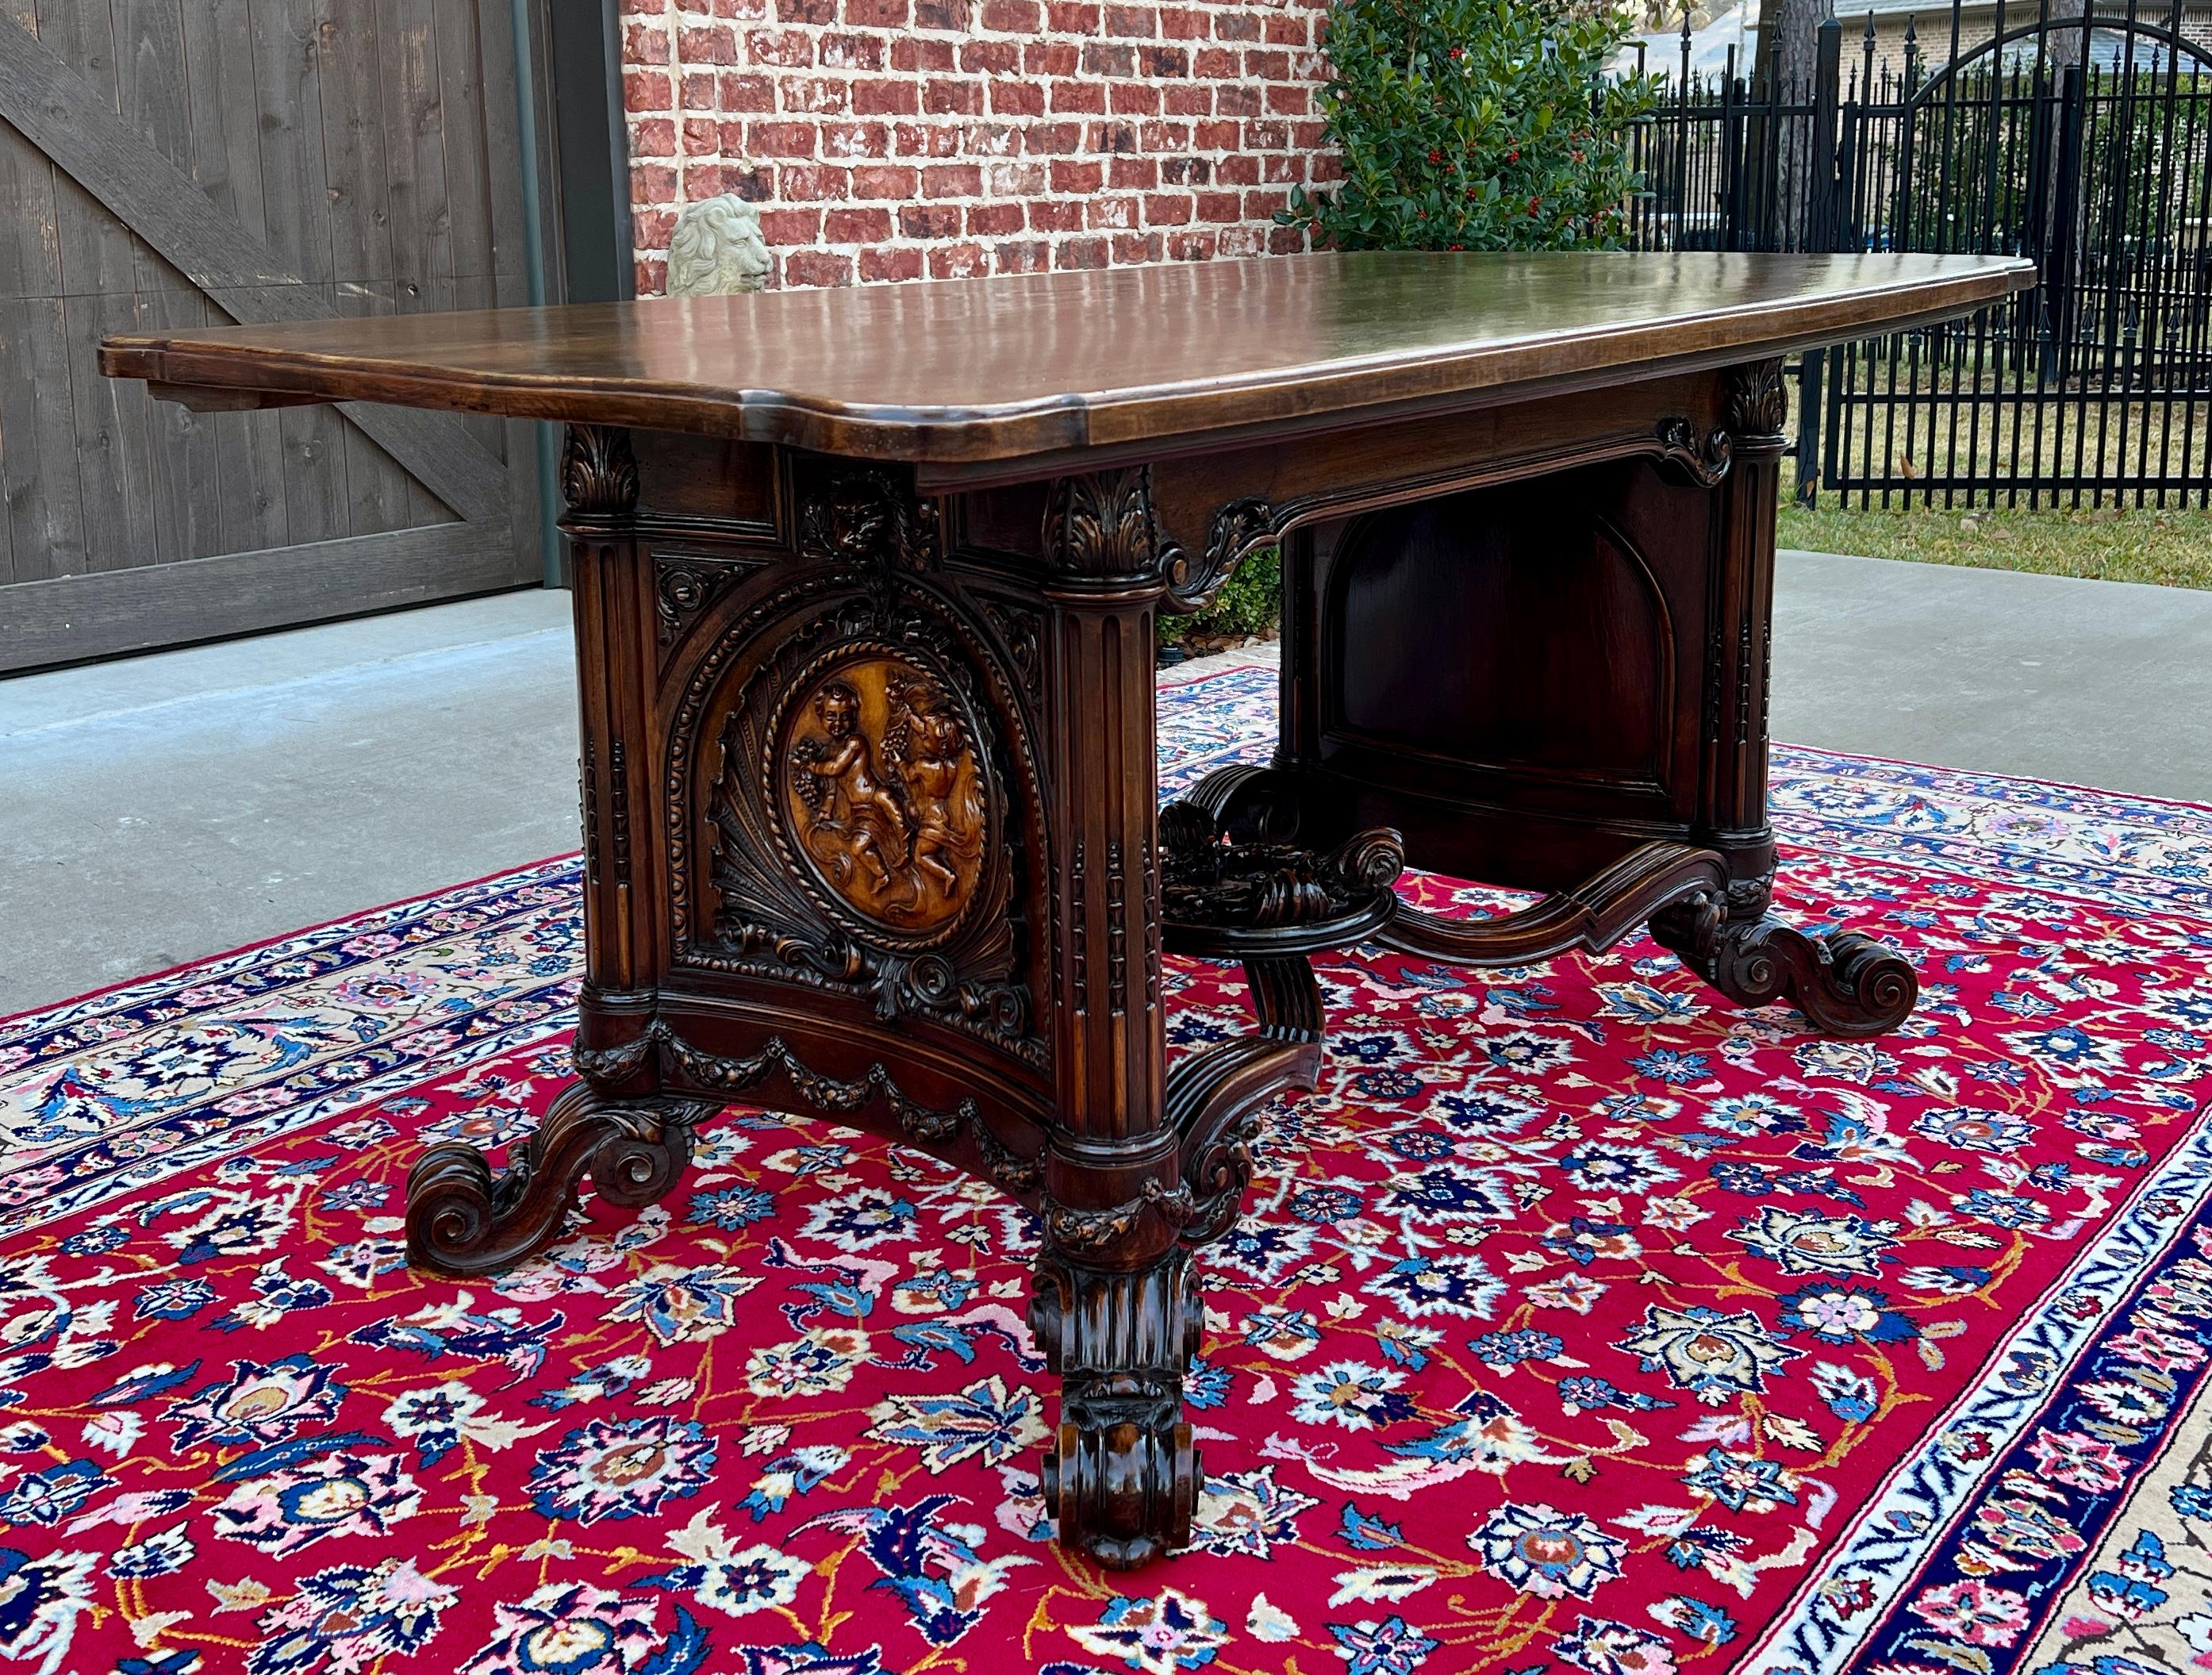 SUPERBE Table de salle à manger ou bureau en chêne ancien de style Renaissance française ~~HAUTEMENT CARVÉ~~Cherubs~~~.

Cette table est un véritable 